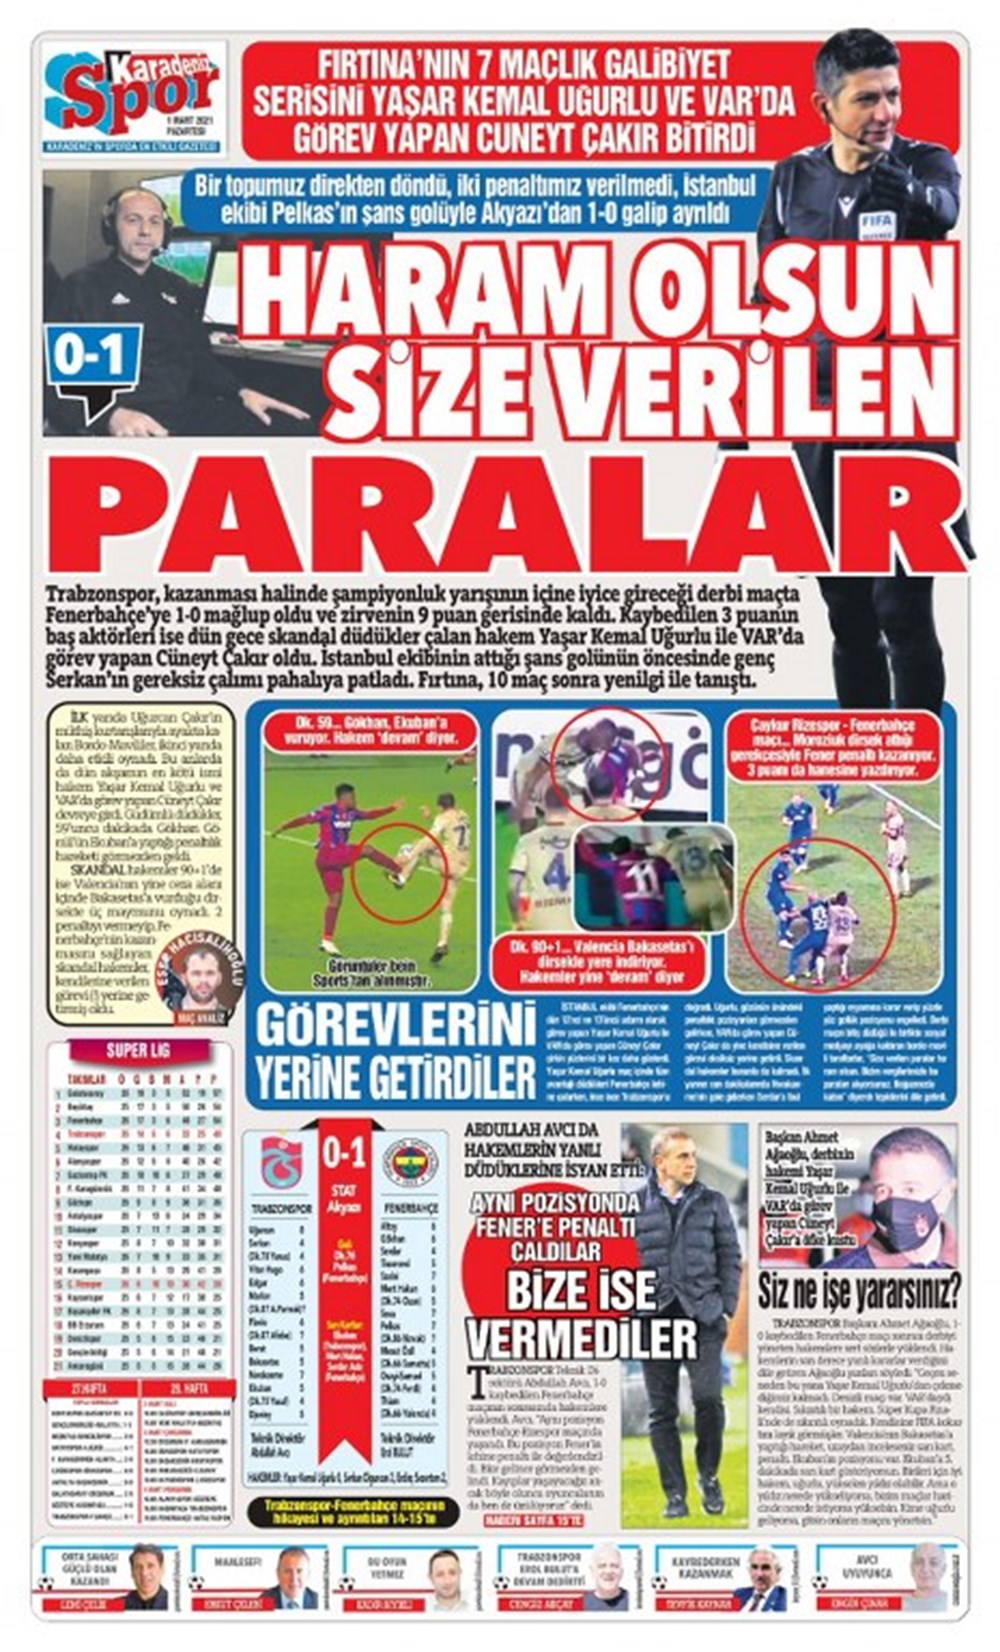 Karadeniz Gazetesi, “Haram olsun size verilen paralar”, “Fırtına’nın 7 maçlık galibiyet serisini Yaşar Kemal Uğurlu ve VAR’da görev yapan Cüneyt Çakır bitirdi”,